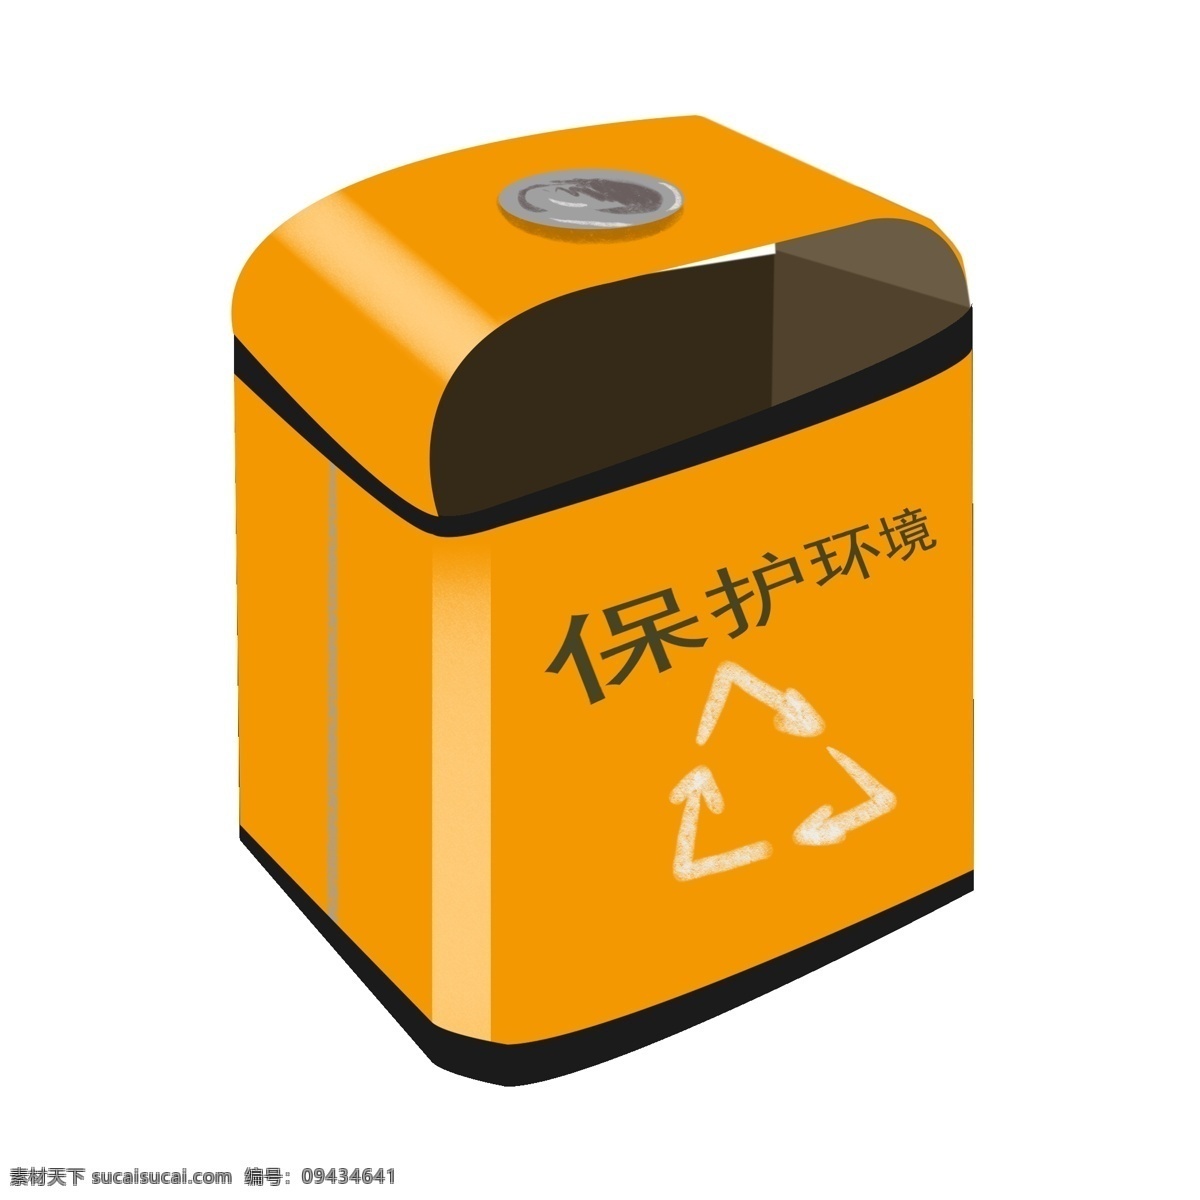 回收 循环 垃圾桶 插画 黄色 环保 利用 绿色环保 低碳环保循环 环保垃圾桶